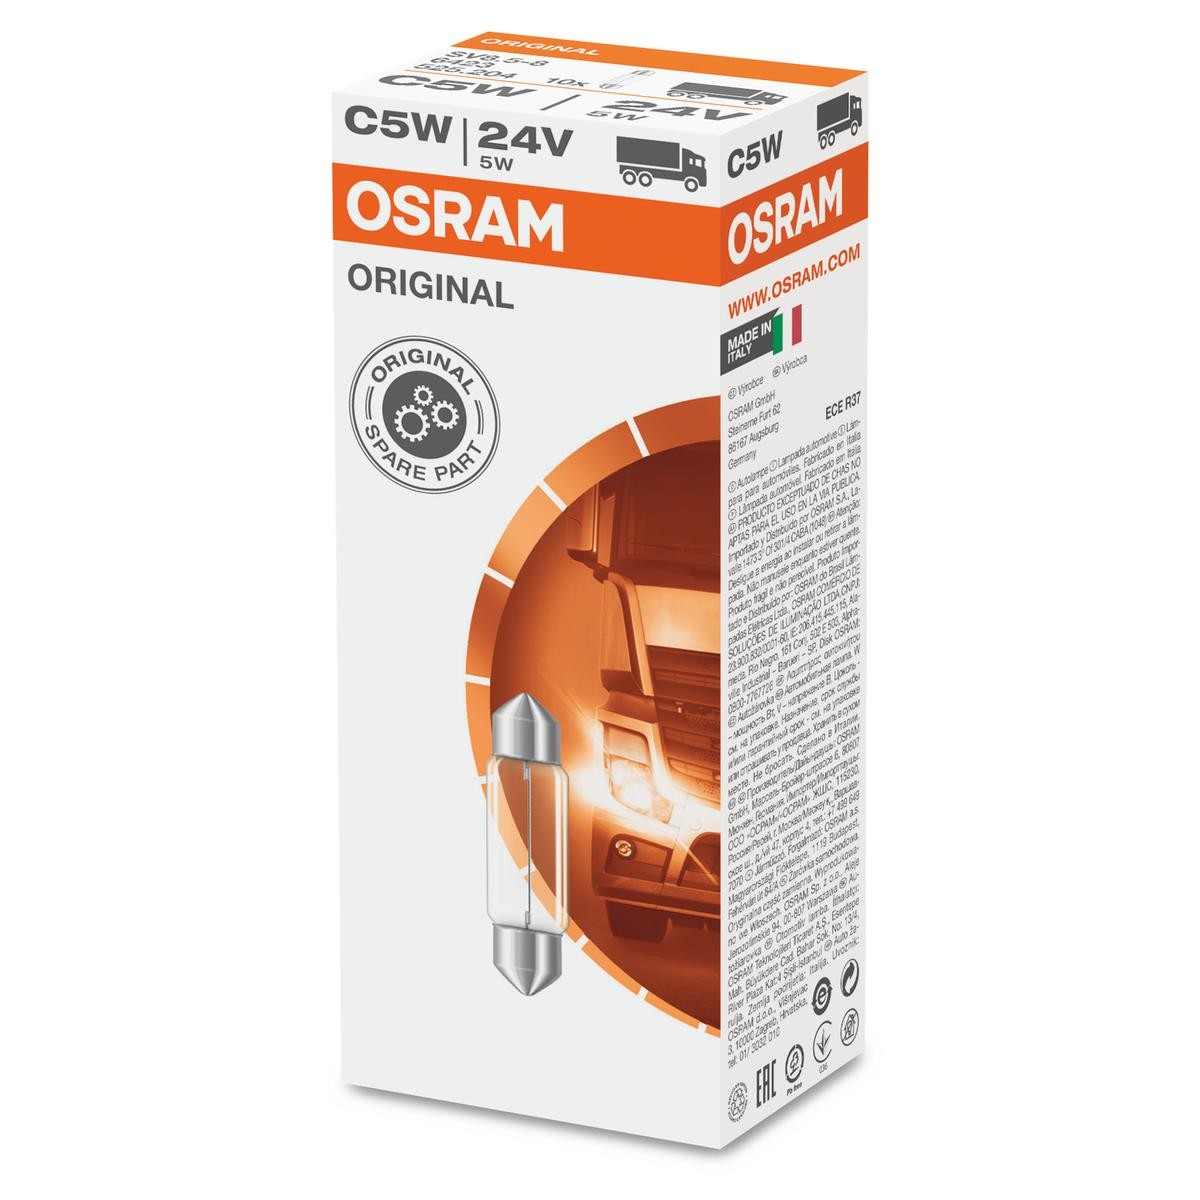 C5W OSRAM ORIGINAL LINE 6423 Kennzeichenbeleuchtung, Birne 24V 5W